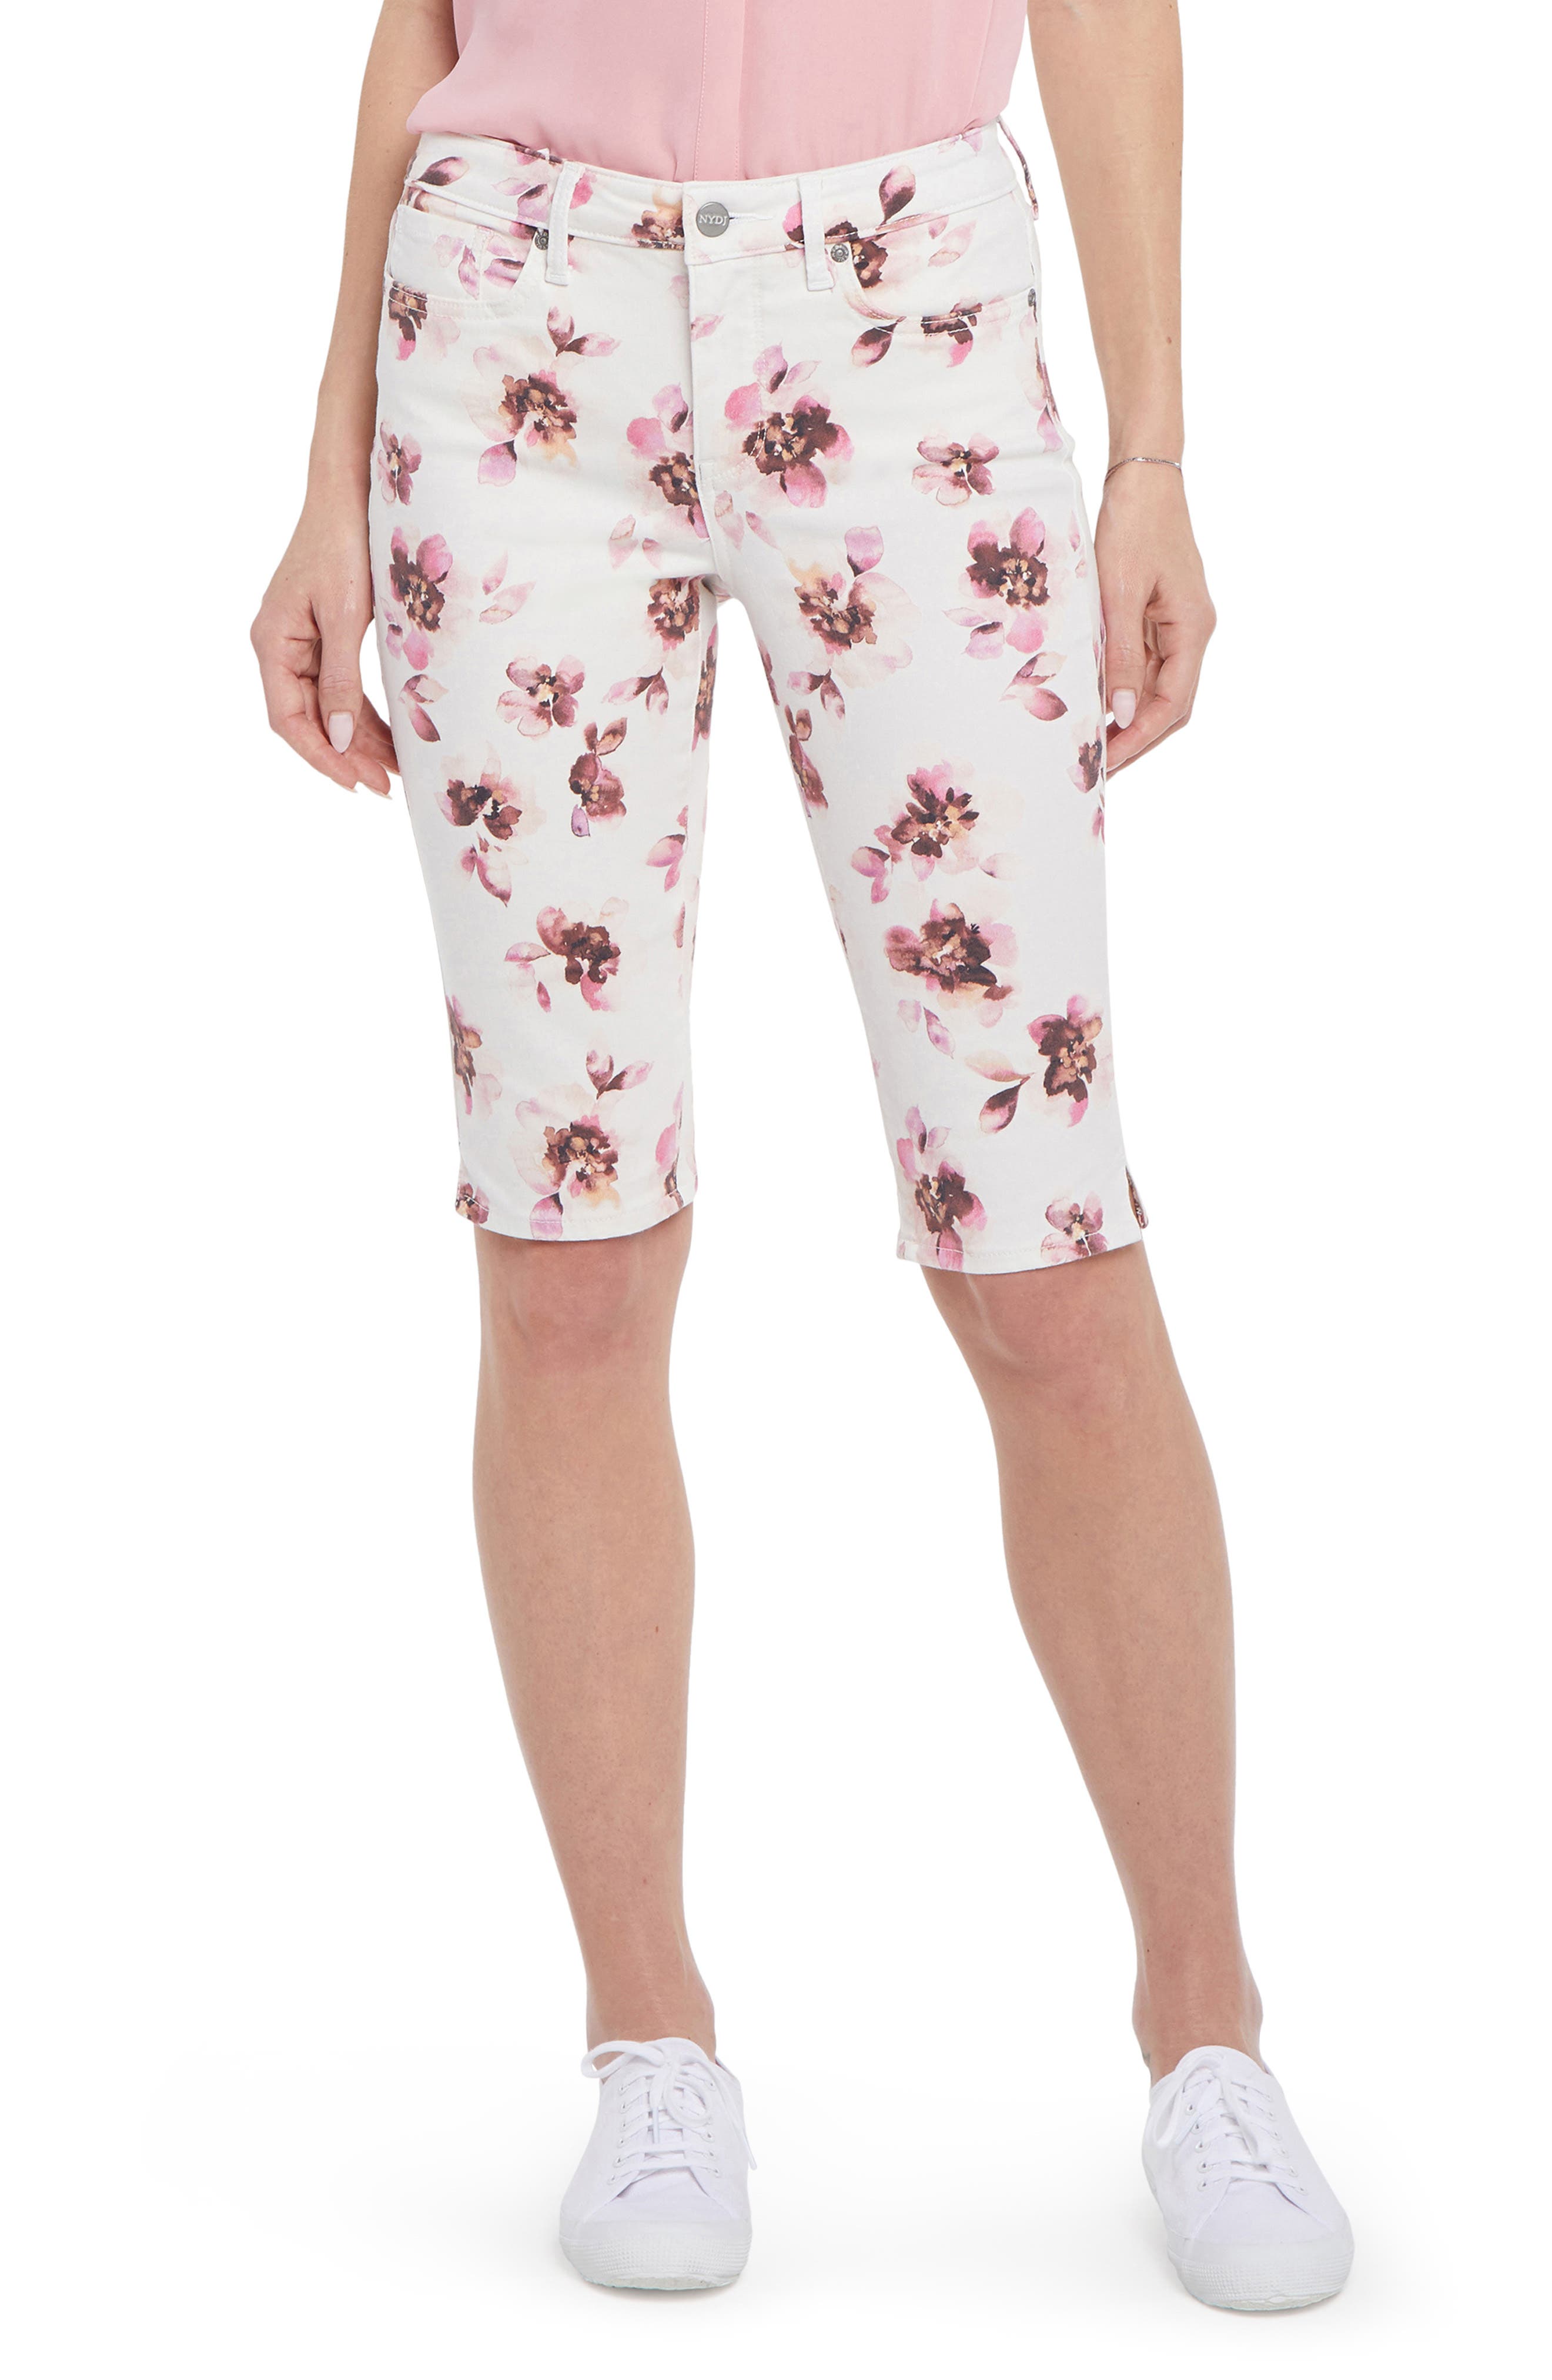 TACVASEN Women Casual Shorts Summer Beach Drawstring Shorts Lined Bermuda Loose Shorts